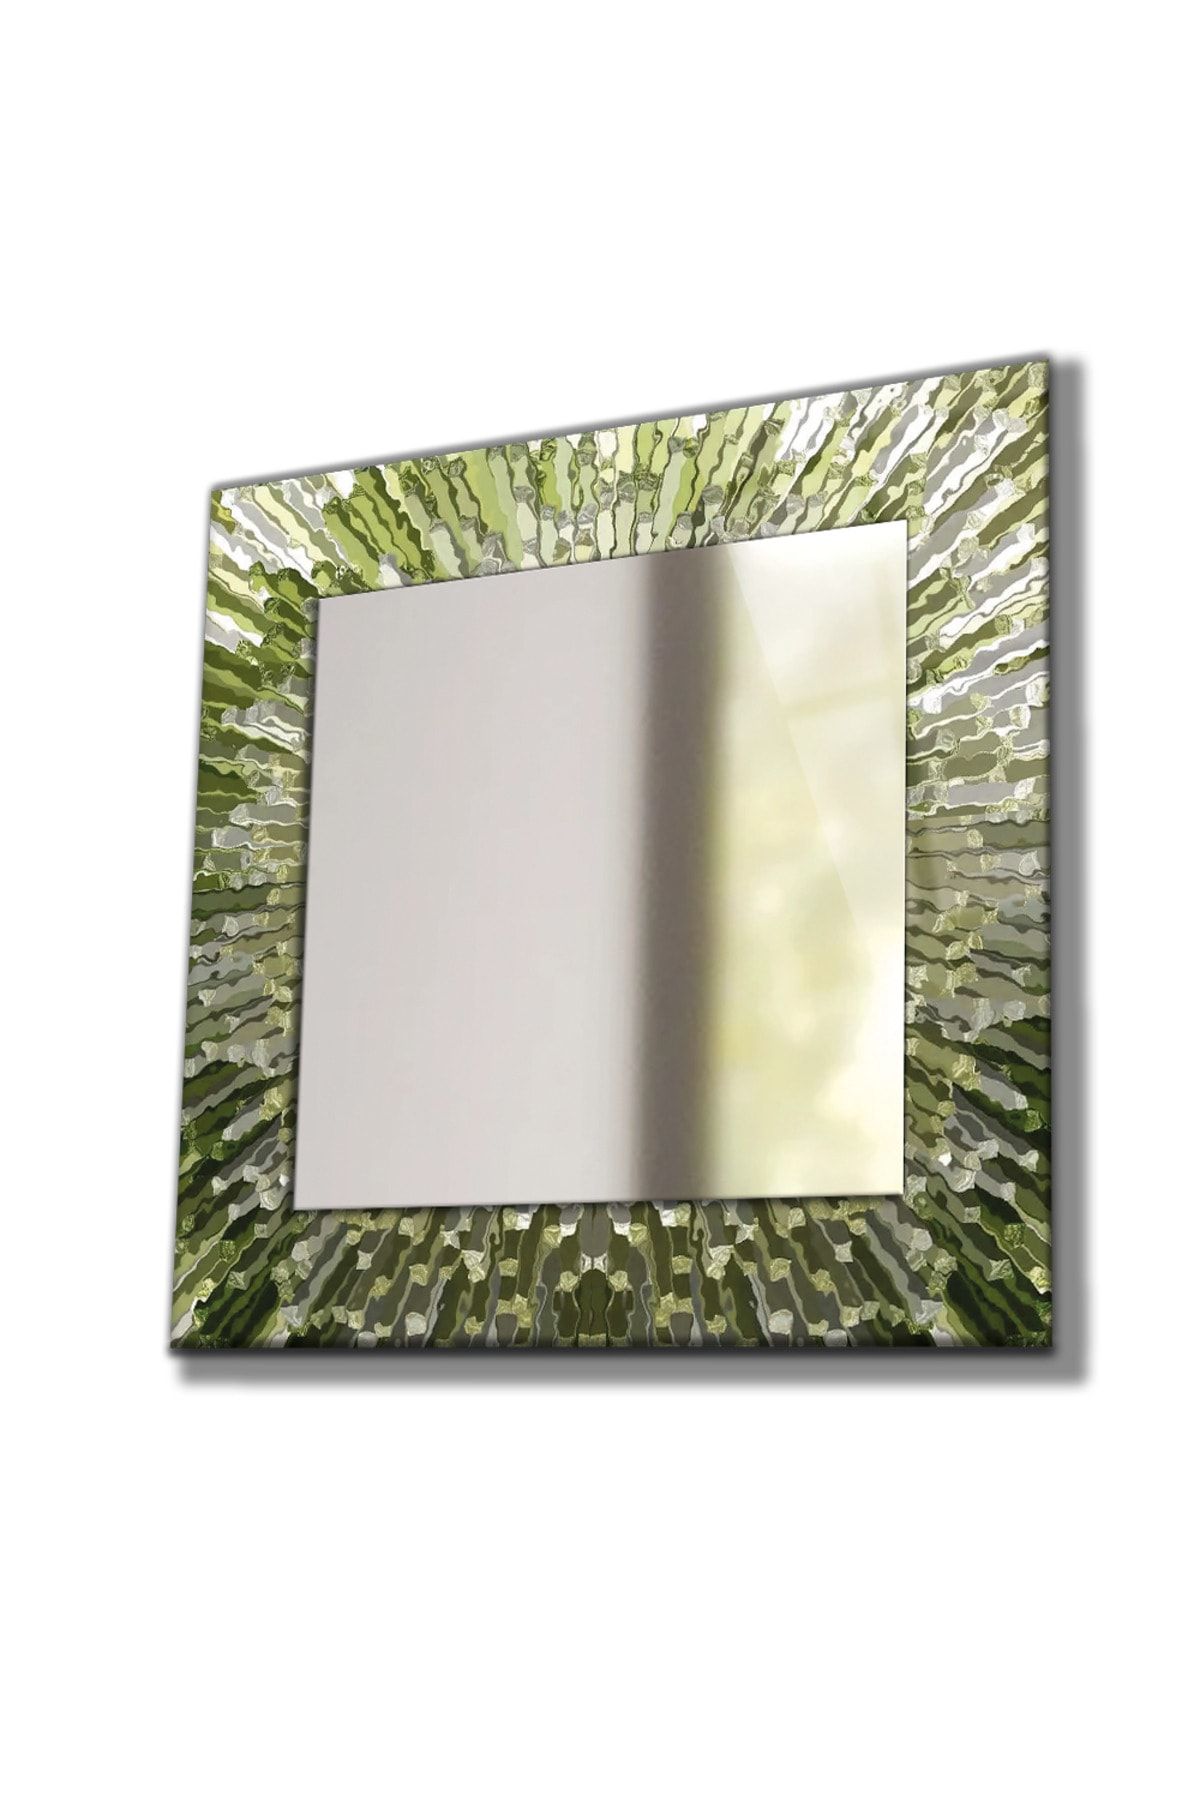 idealizbiz Desenli Duvar Aynası, Temperli Cam Kenarlı Dekoratif Ayna, Mutfak Banyo Wc Tuvalet Salon Antre Hol